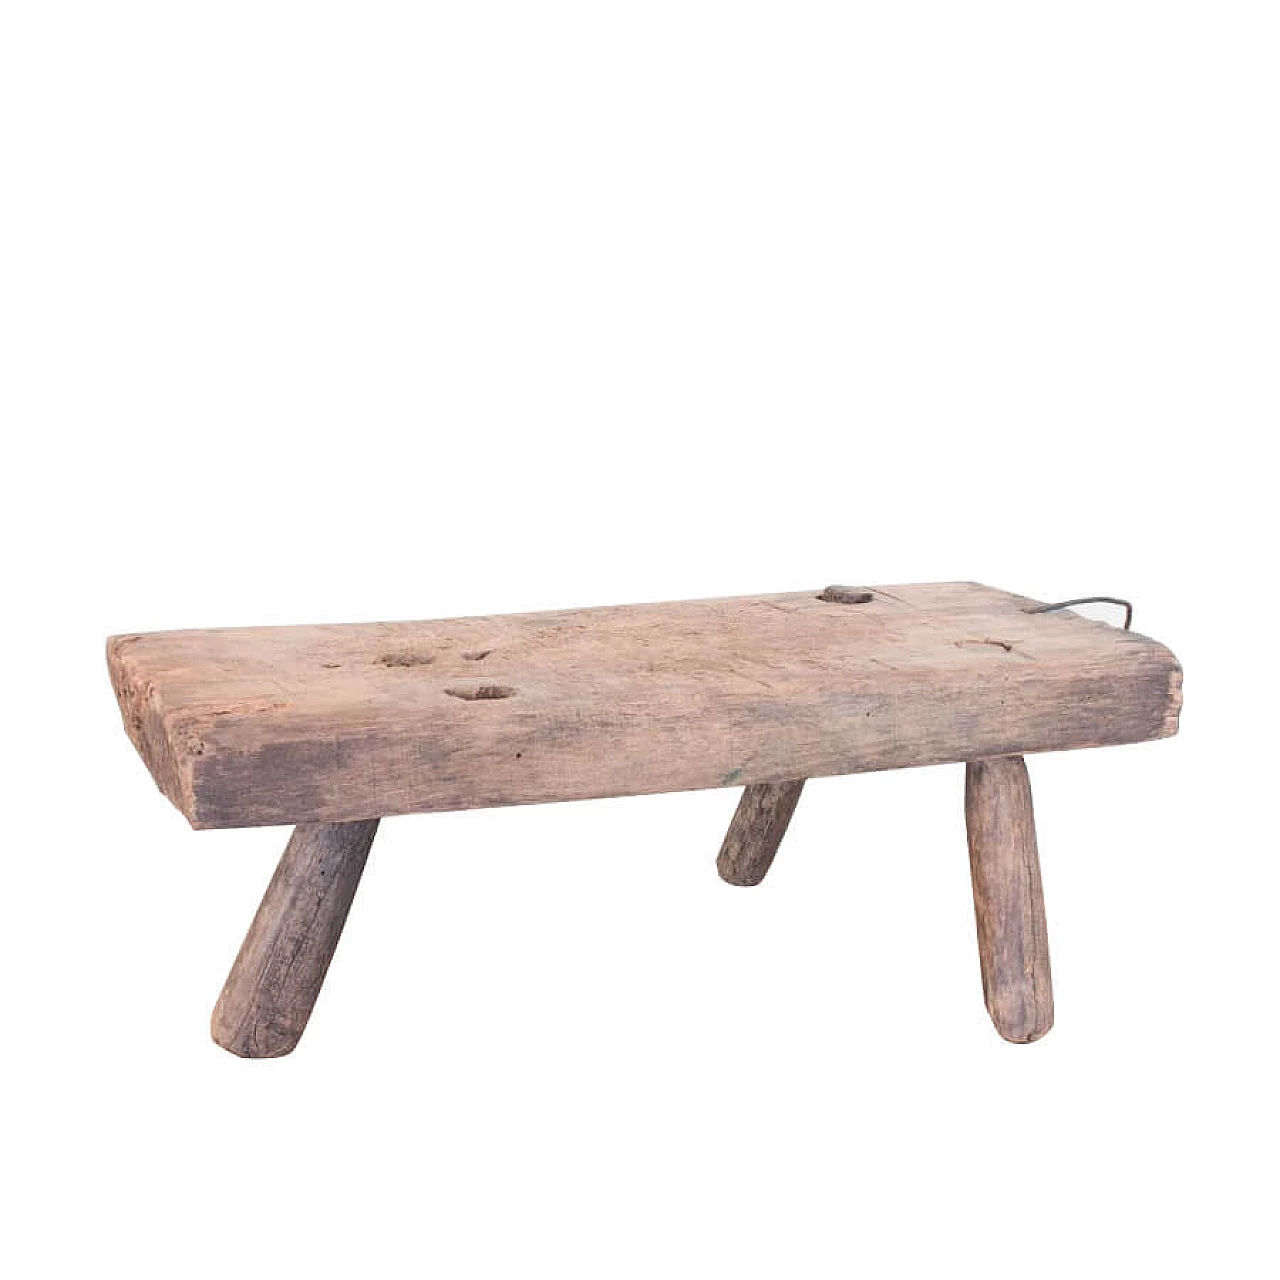 Rustic fir stool 1086981